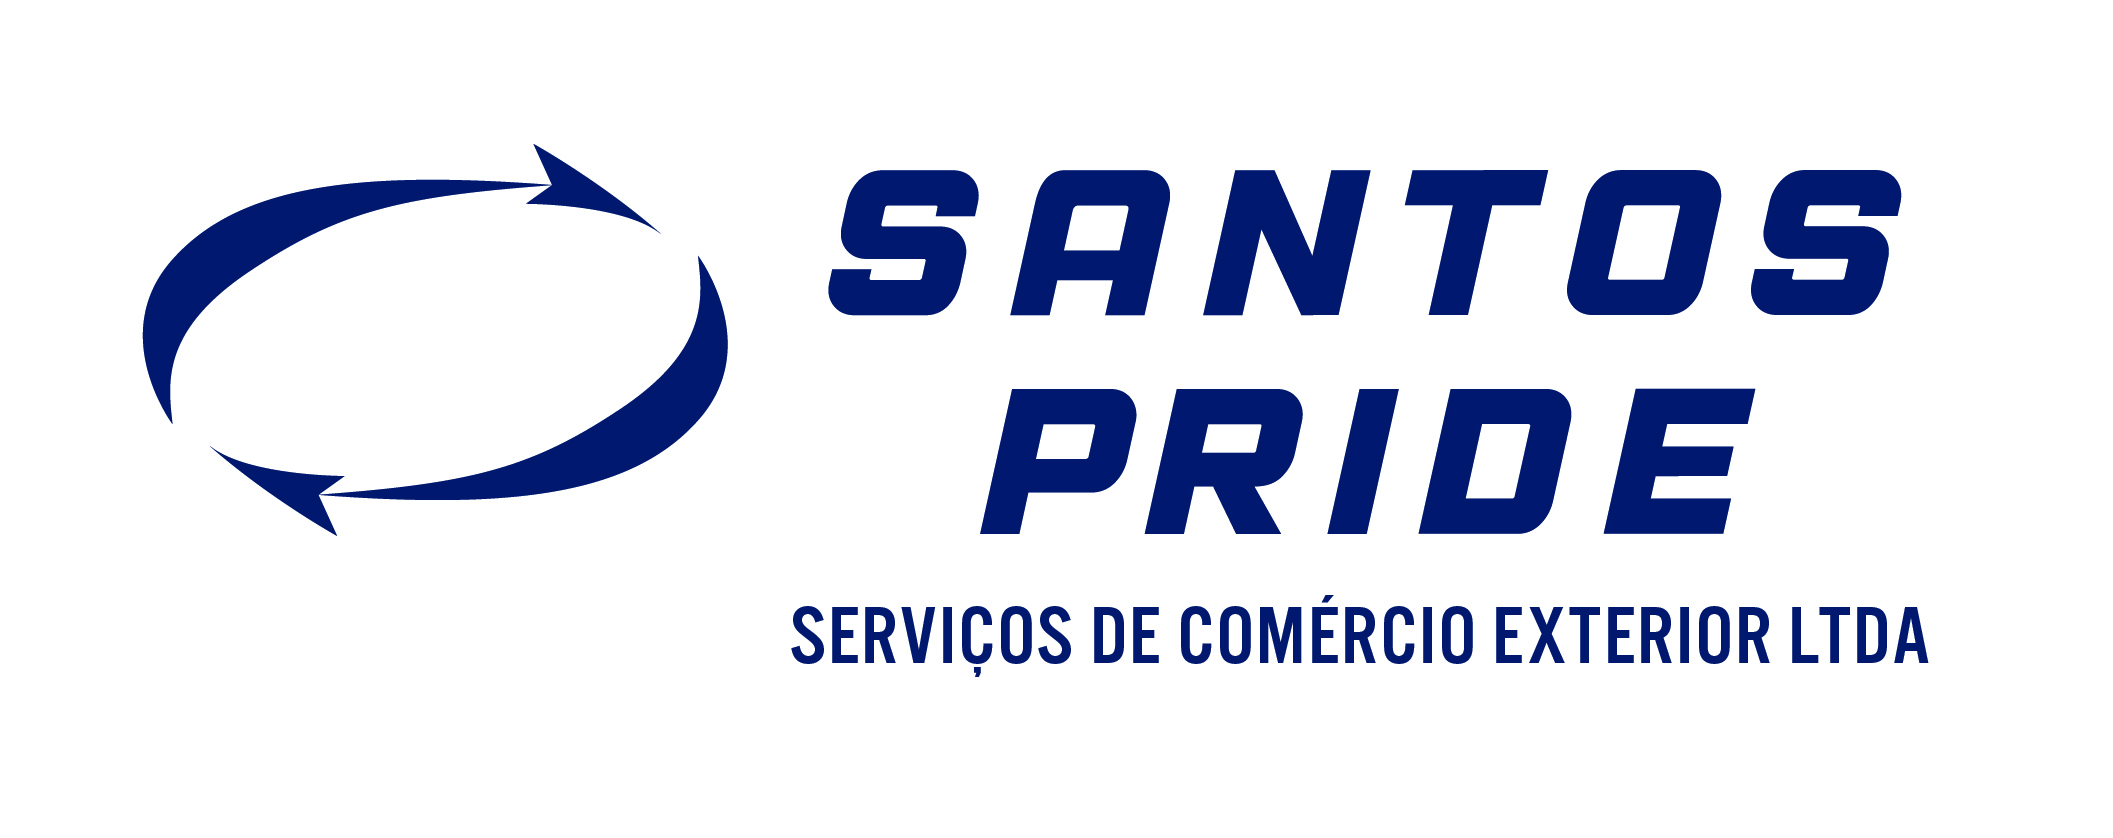 SANTOS PRIDE SERVIÇOS DE COMÉRCIO EXTERIOR LTDA